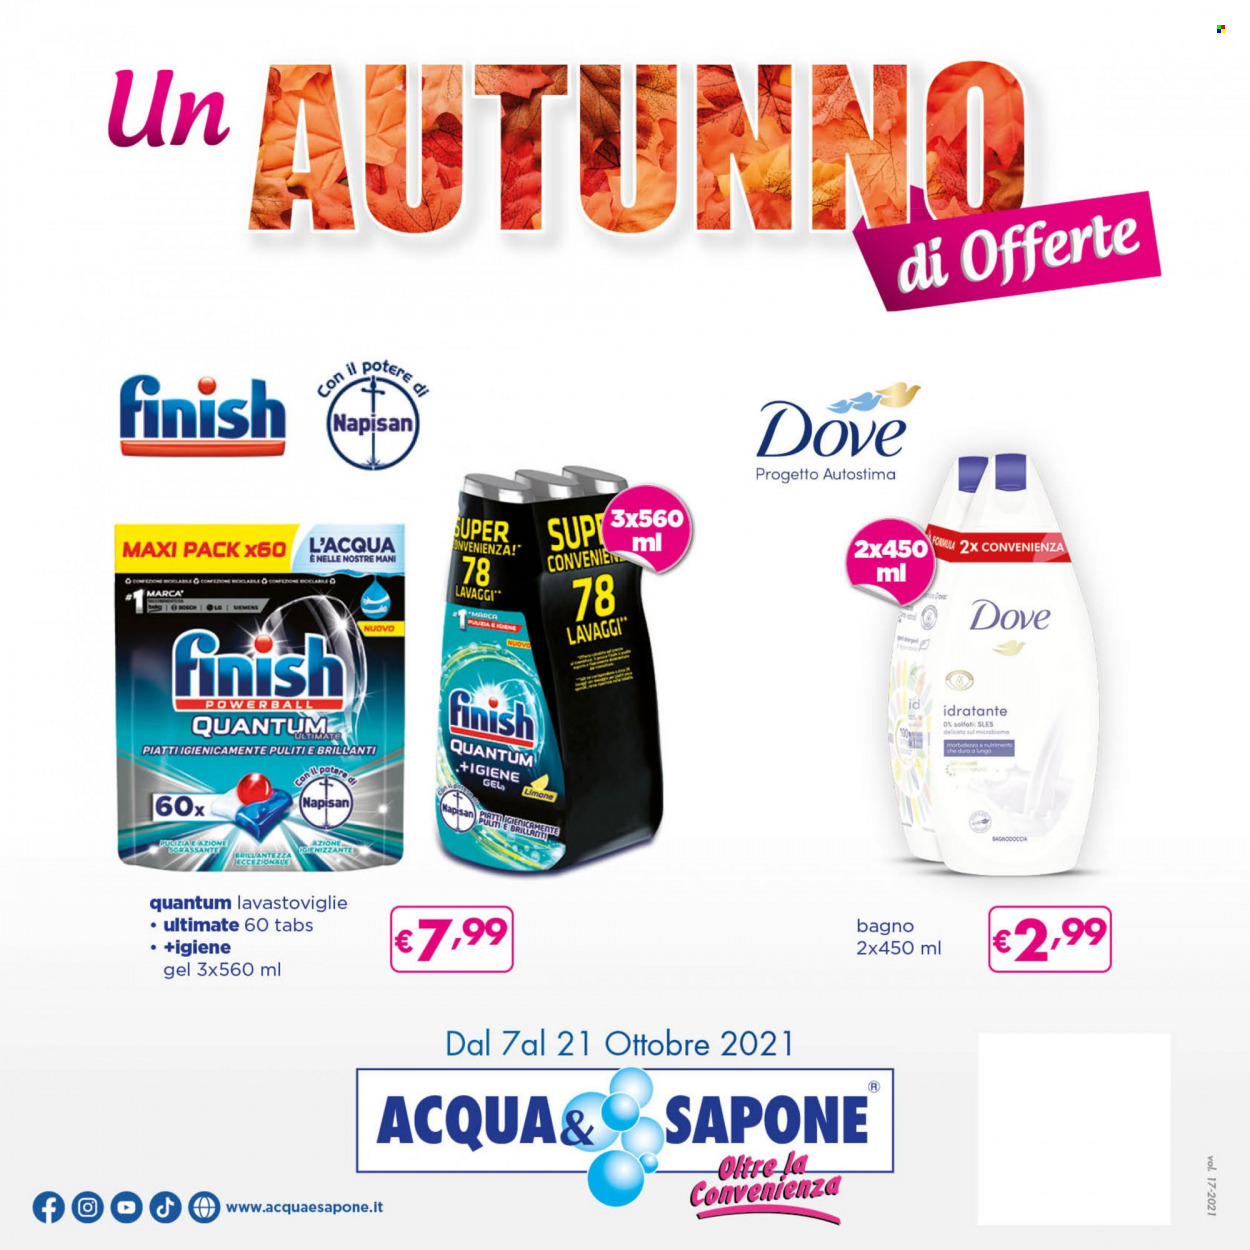 thumbnail - Volantino Acqua & Sapone - 7/10/2021 - 21/10/2021 - Prodotti in offerta - Napisan, Finish, sapone, gel doccia. Pagina 1.